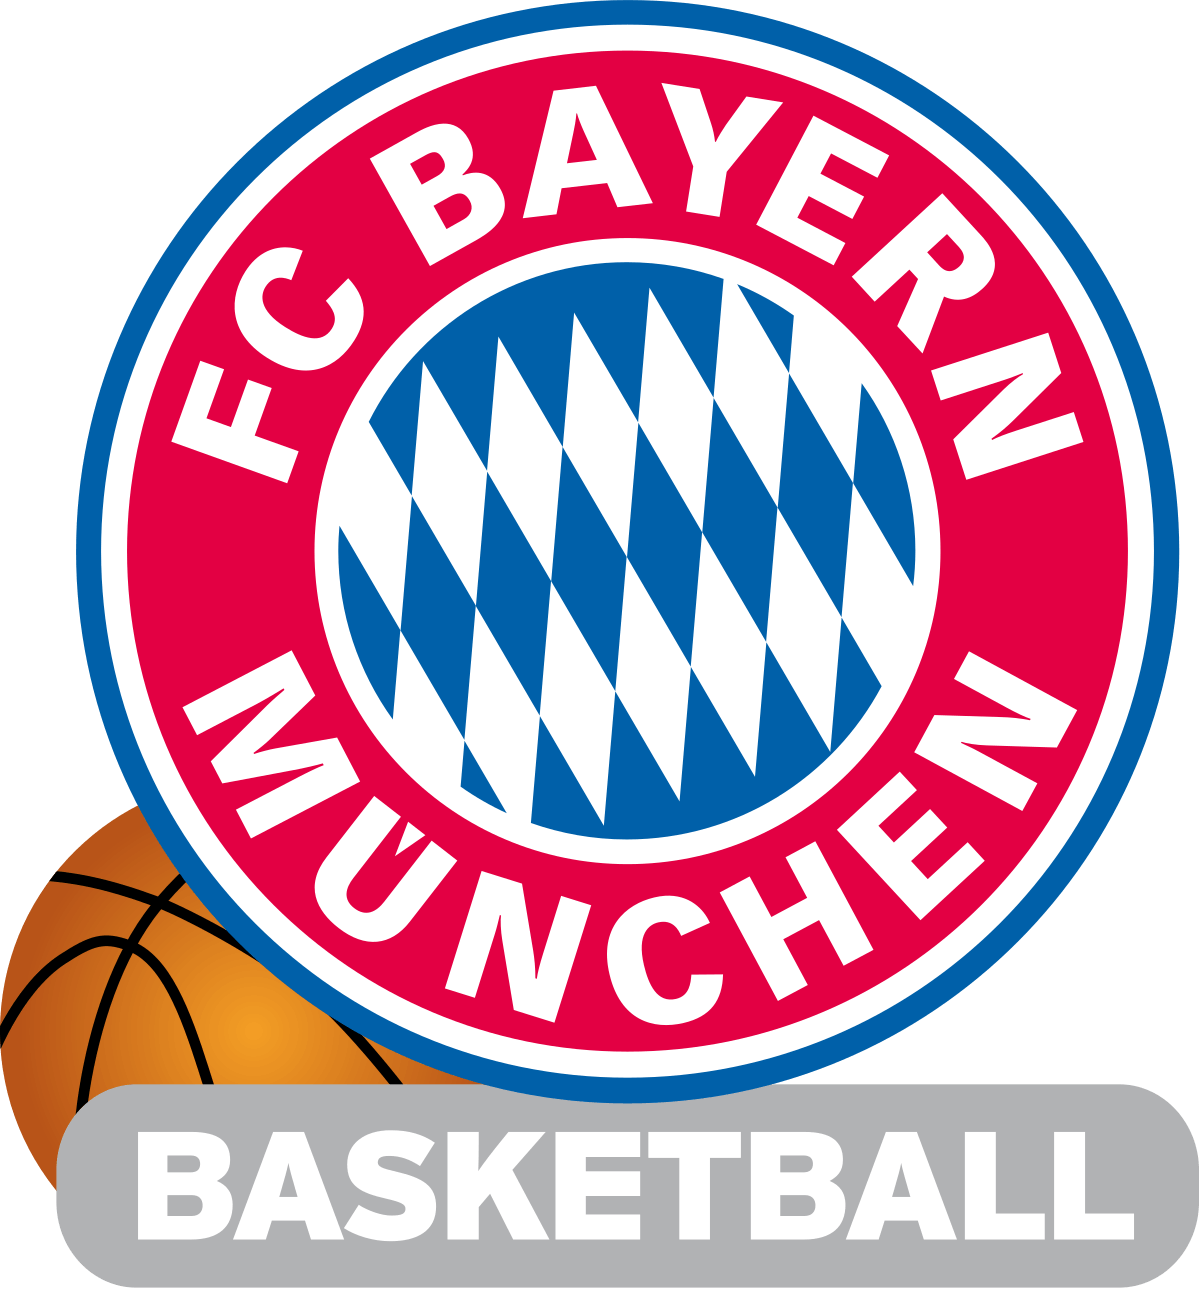 Equipo que renovó plaza de forma anticipada para la temporada 19/20, y que por ello, ha resultado premiado con dos entradas para asistir en directo y de forma gratuita el encuentro de la Euroleague, Baskonia-FC Bayern Munich.